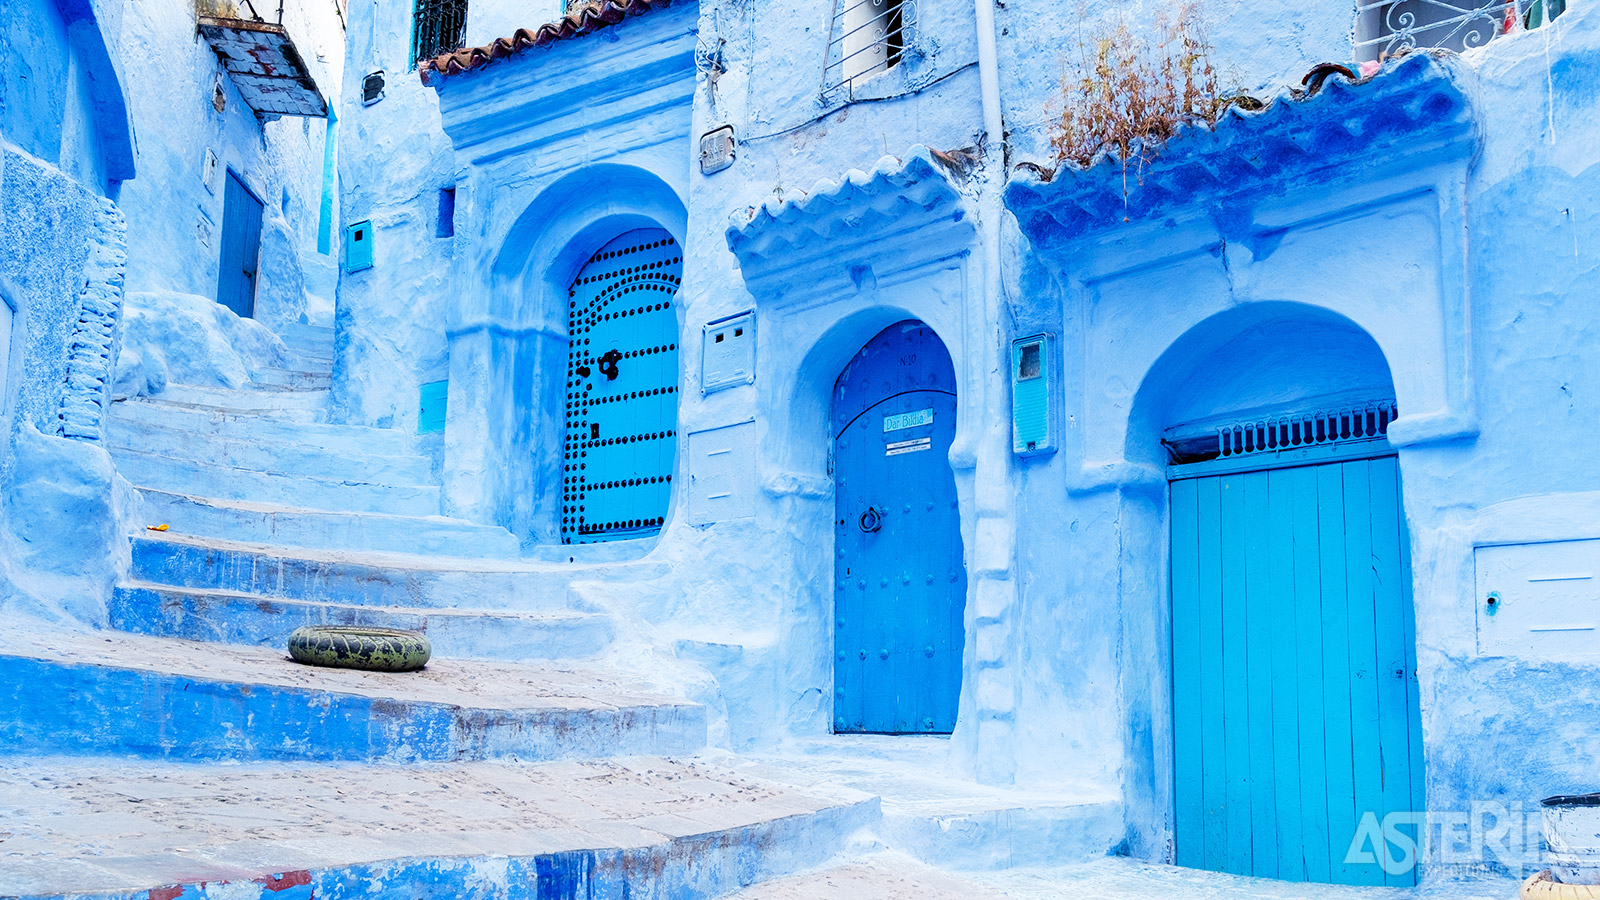 De indigoblauw geschilderde huizen hebben het stadje wereldberoemd gemaakt, waardoor Chefchaouen veel passeert op Instagram